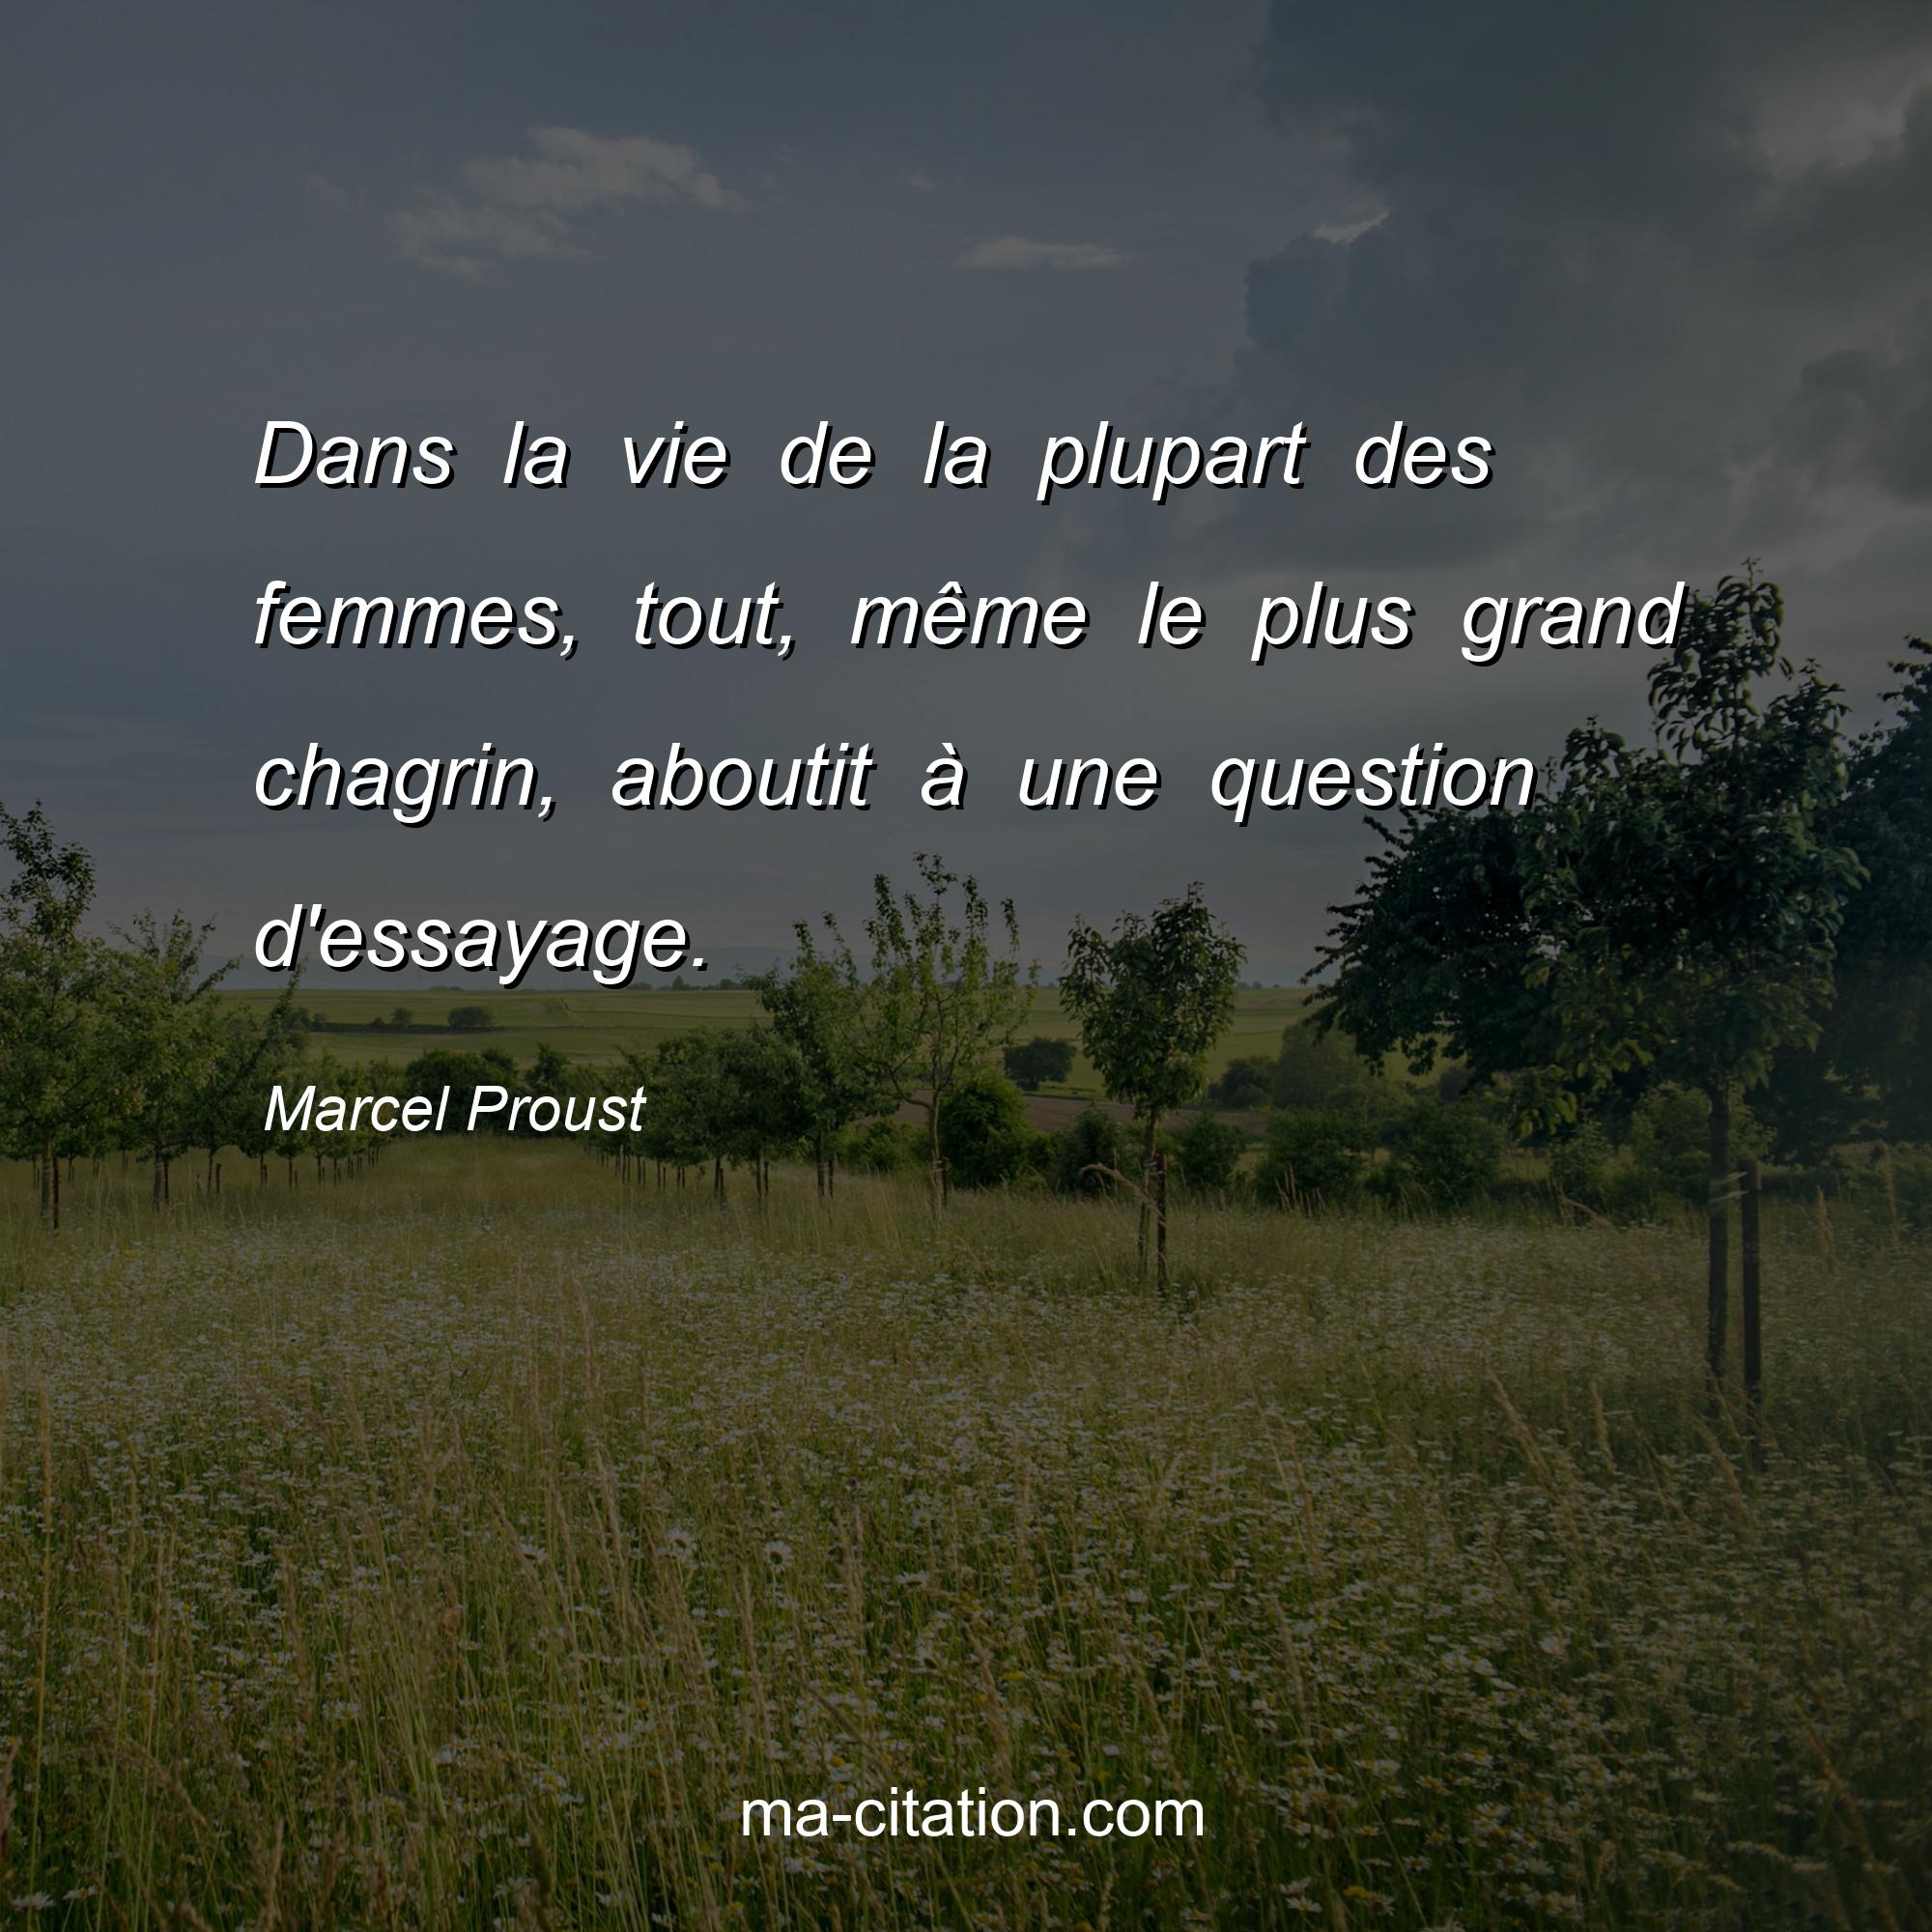 Marcel Proust : Dans la vie de la plupart des femmes, tout, même le plus grand chagrin, aboutit à une question d'essayage.